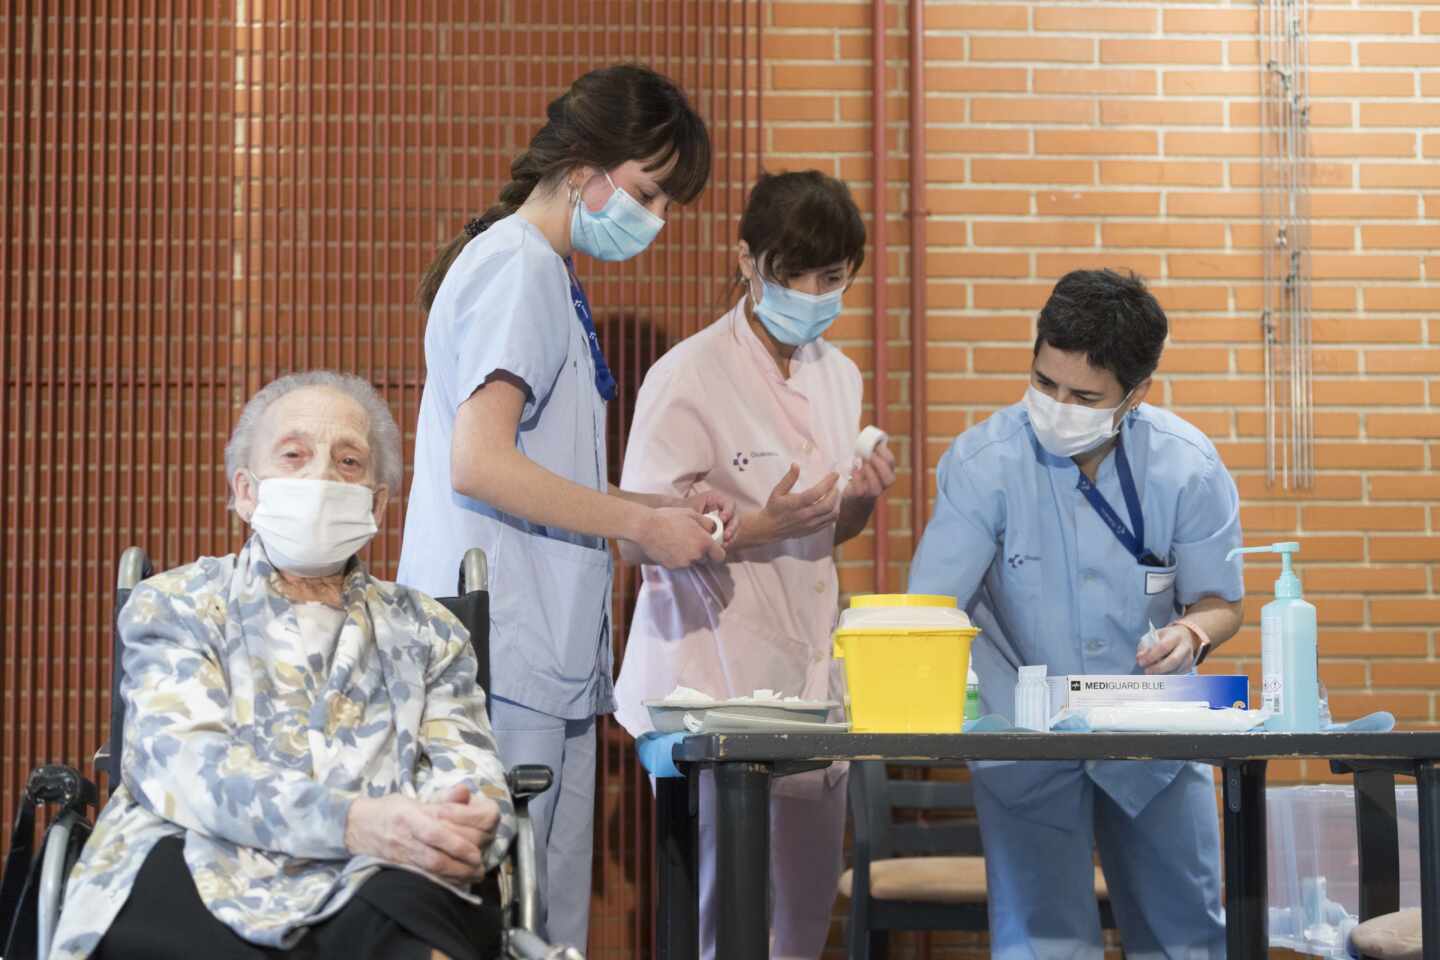 Enfermeras de Osakidetza se disponen a inocular la vacuna a una mujer.